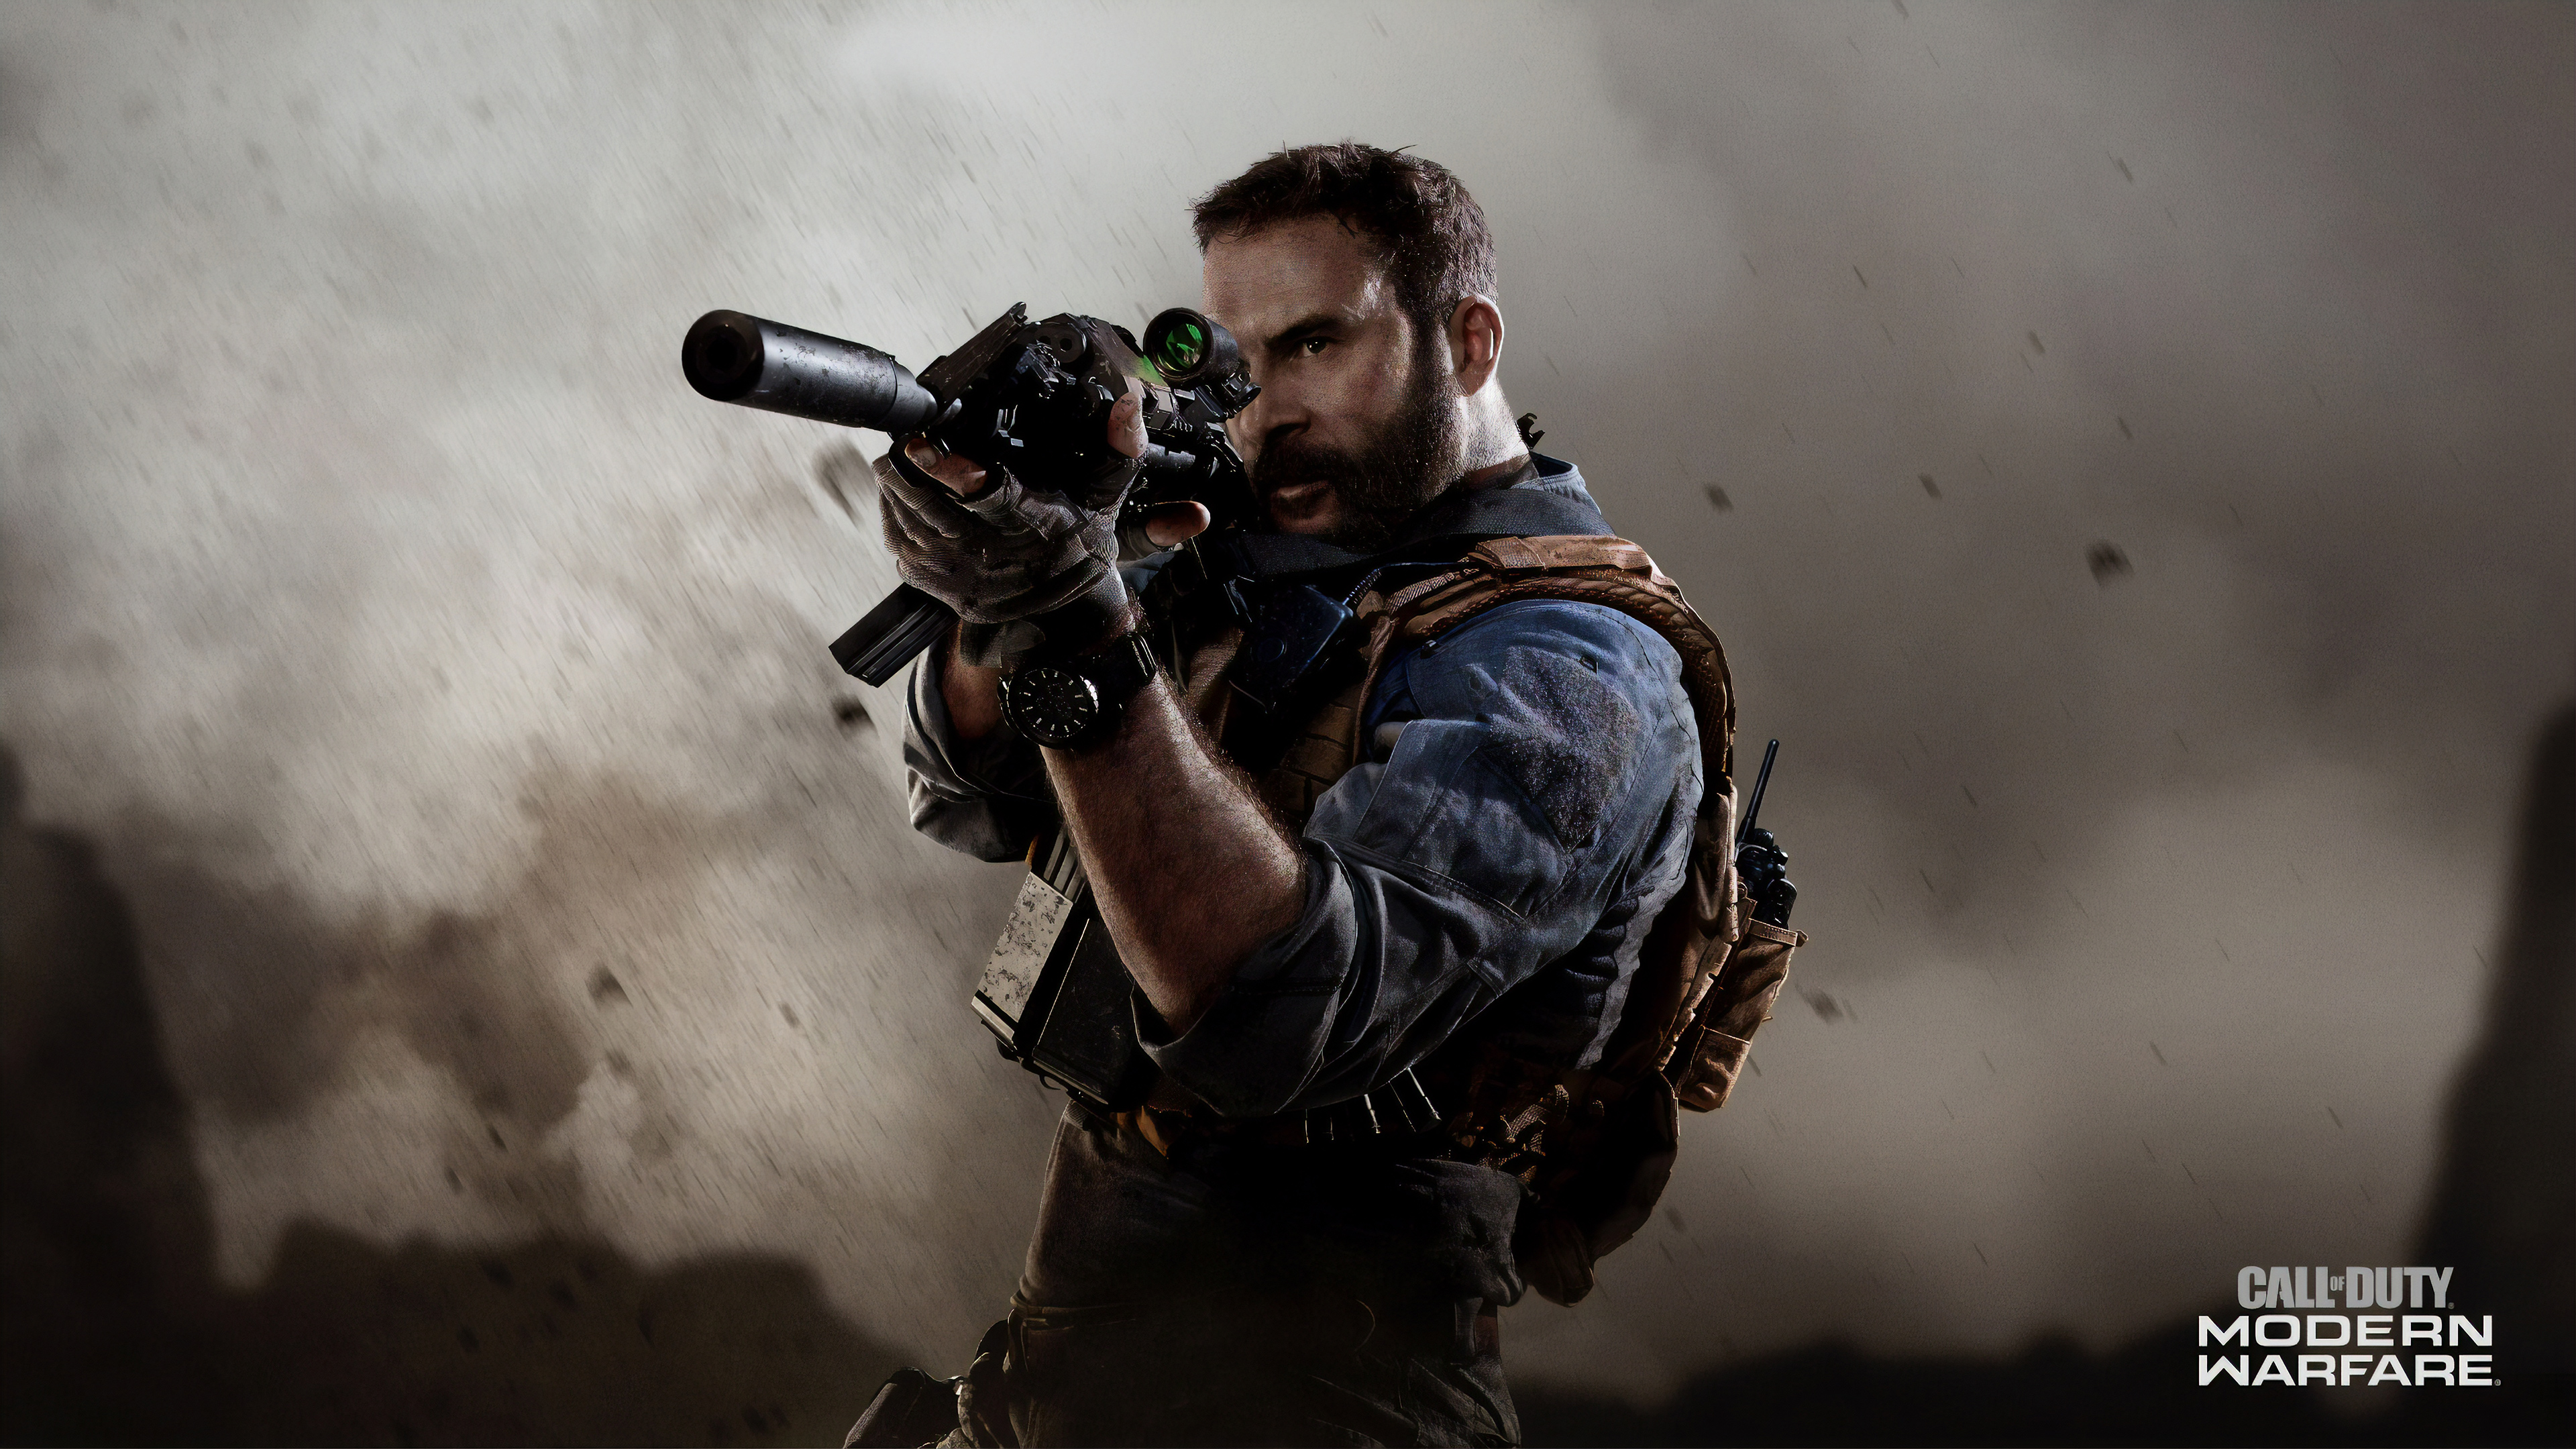 Call Of Duty Modern Warfare 4k Wallpaper,HD Games Wallpapers,4k